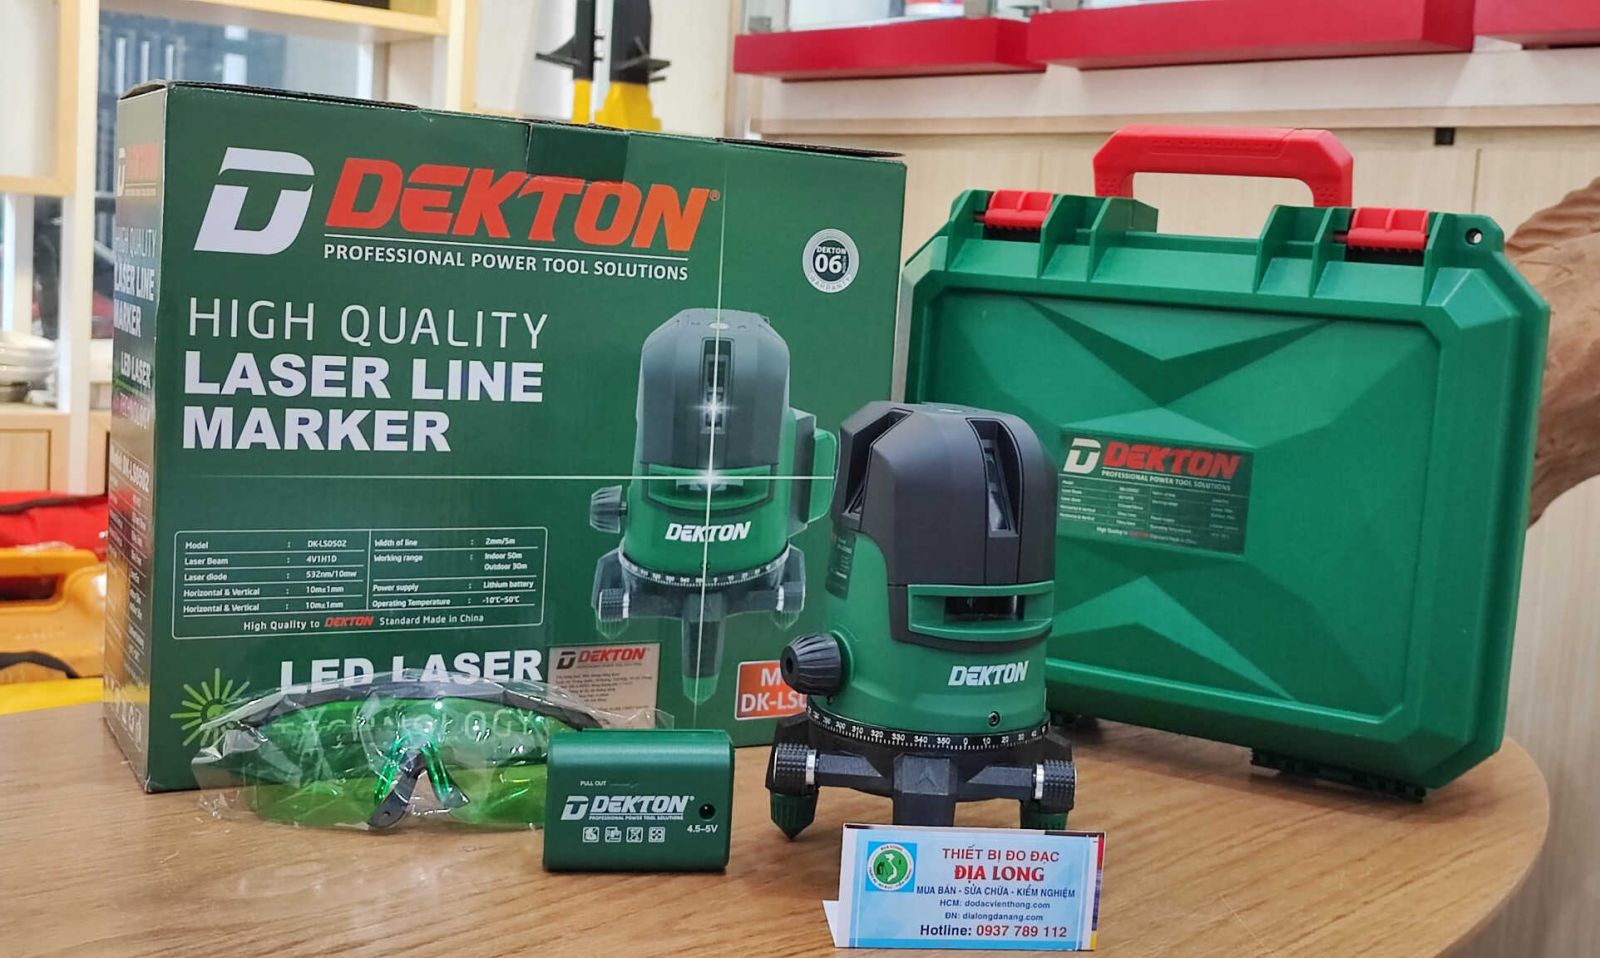 DEKTON DK LS0502 đảm bảo đạt tiêu chuẩn chất lượng cao, độ chính xác cao, dễ sử dụng, thao tác